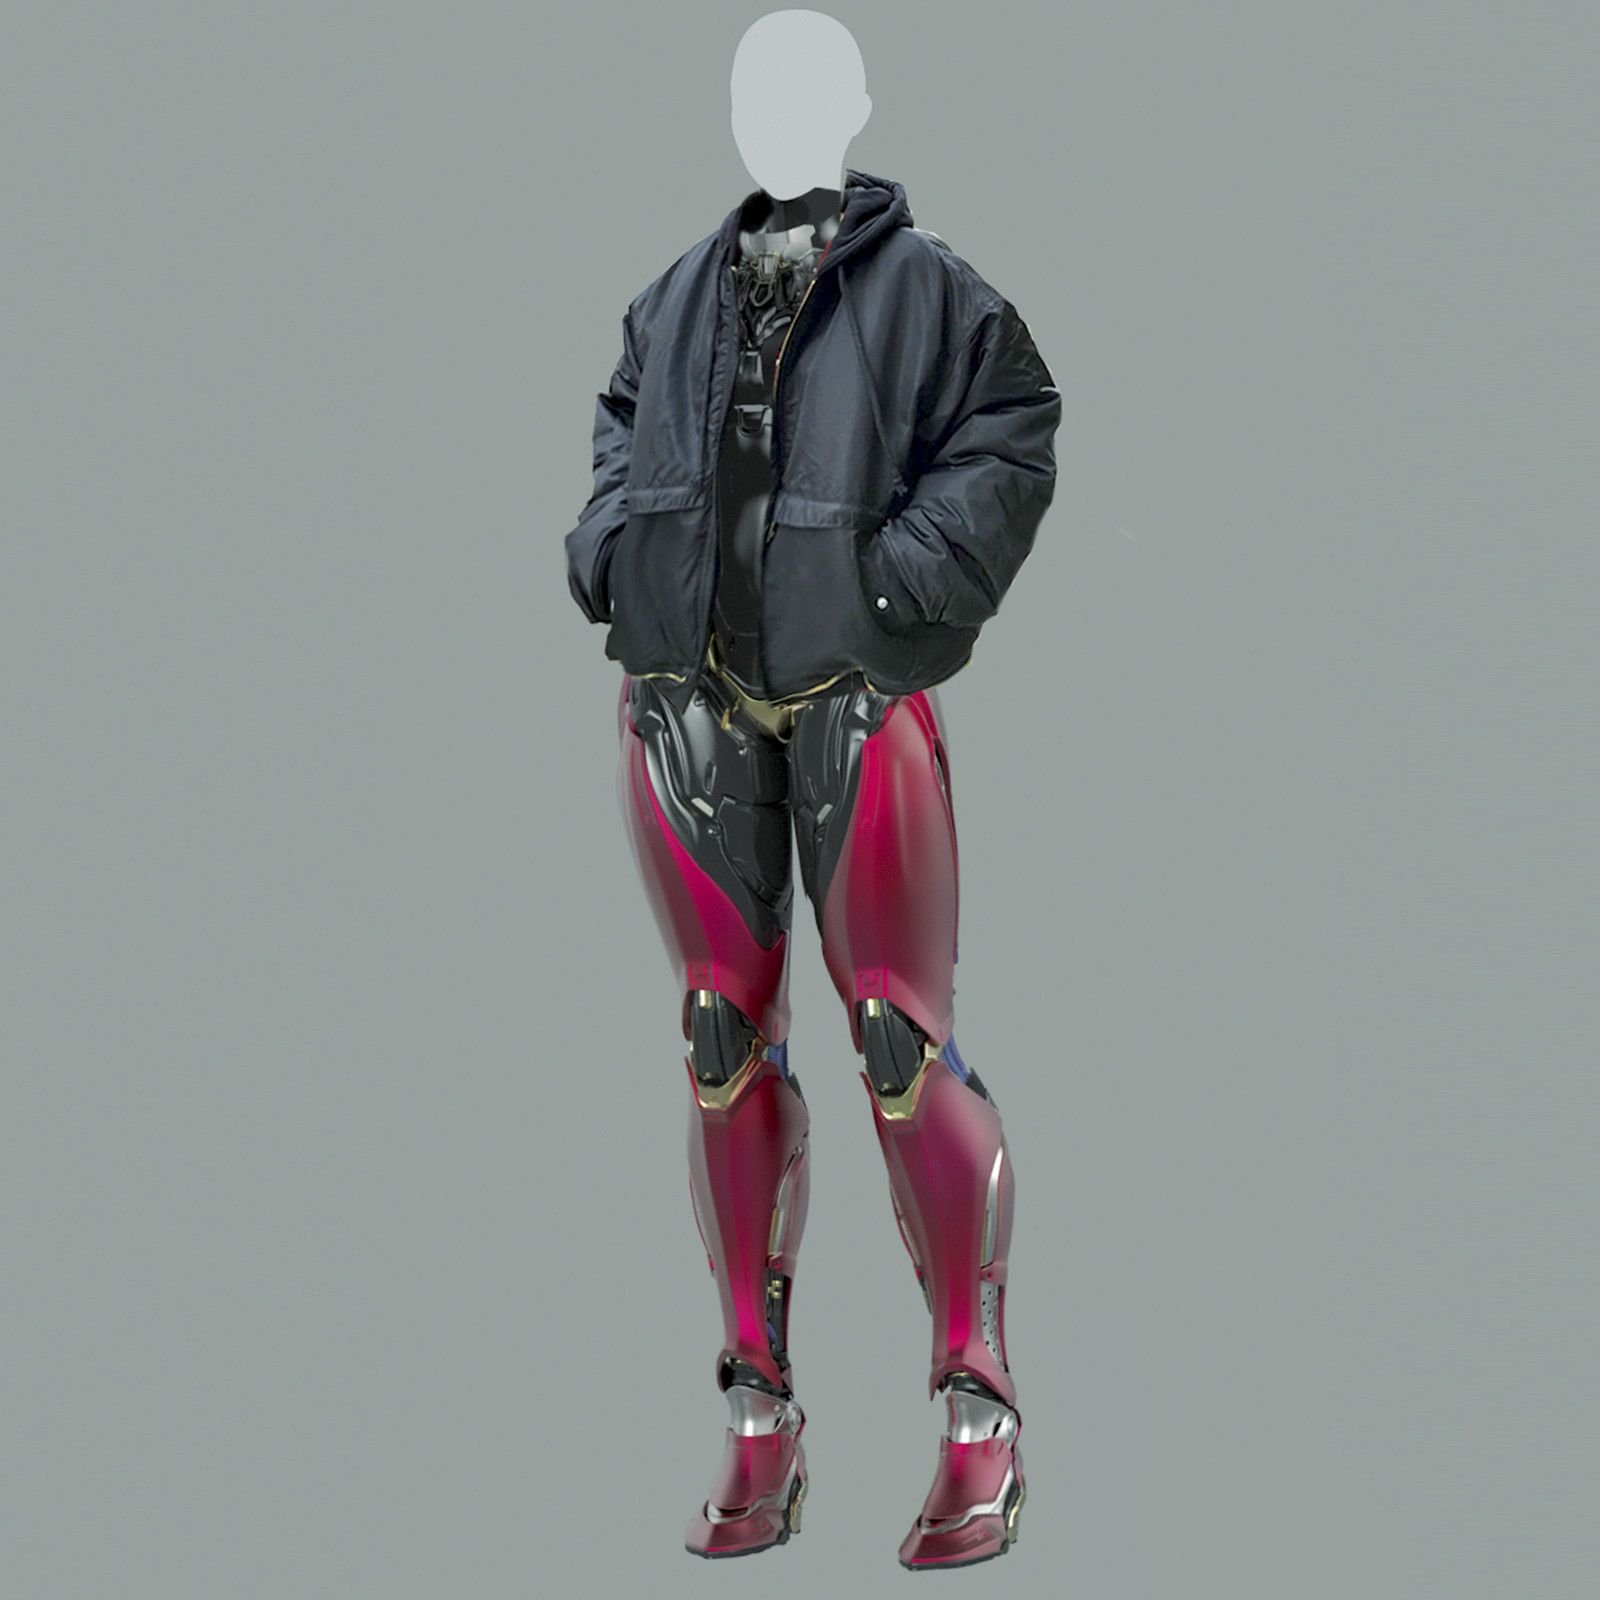 уникальная одежда cyberpunk фото 40